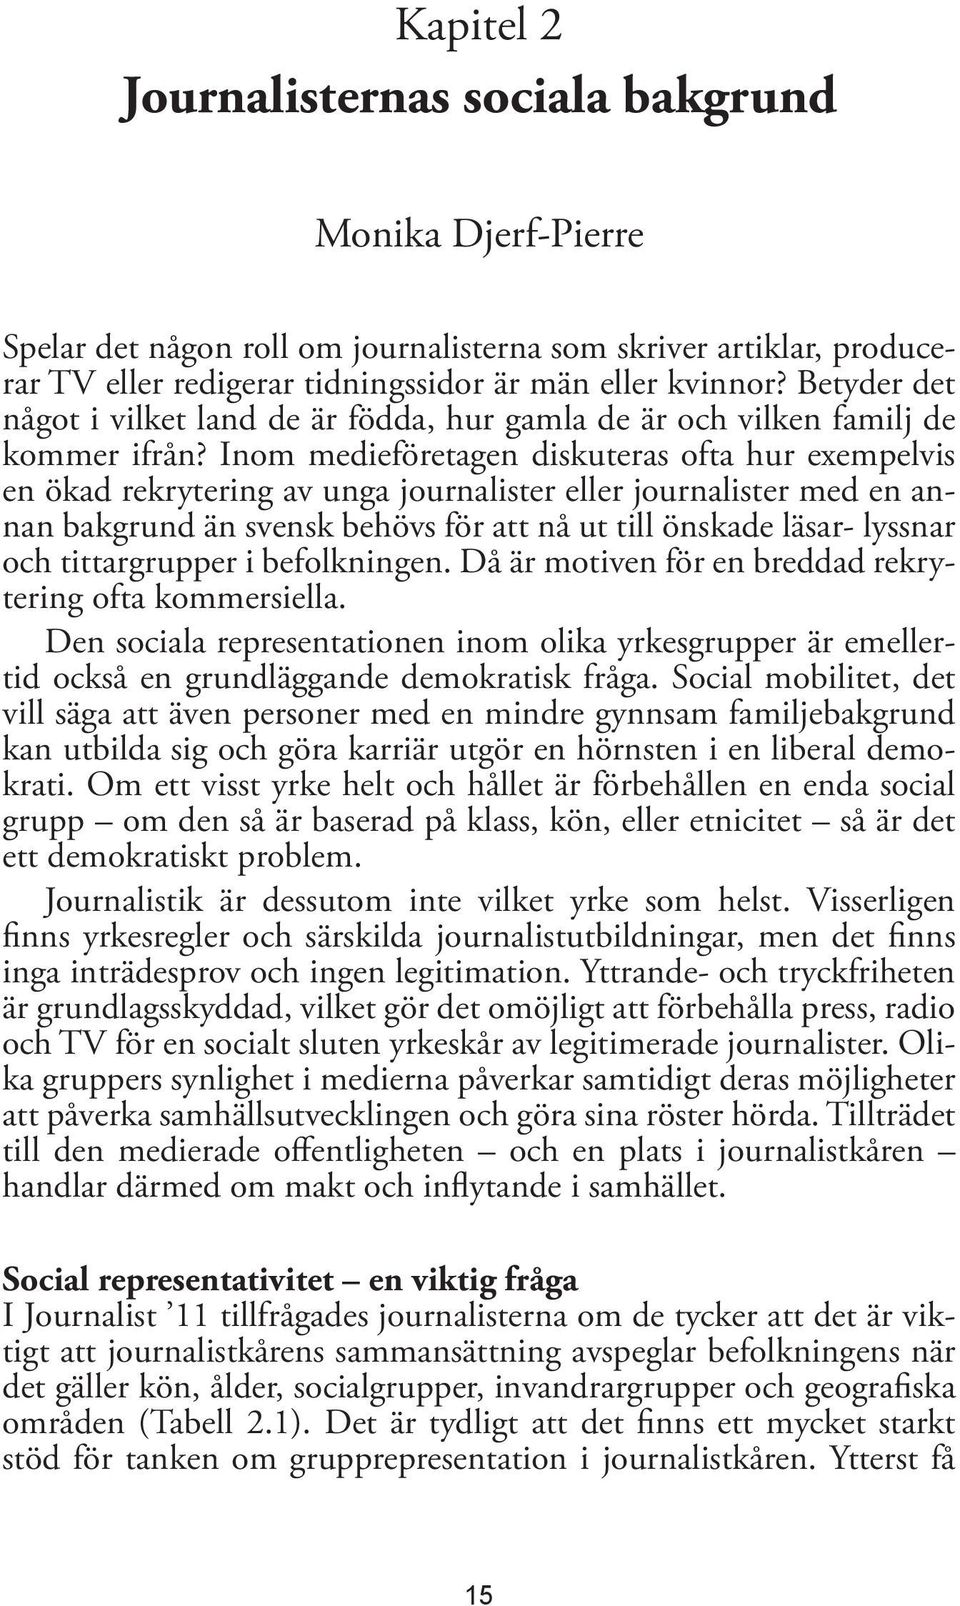 Inom medieföretagen diskuteras ofta hur exempelvis en ökad rekrytering av unga journalister eller journalister med en annan bakgrund än svensk behövs för att nå ut till önskade läsar- lyssnar och